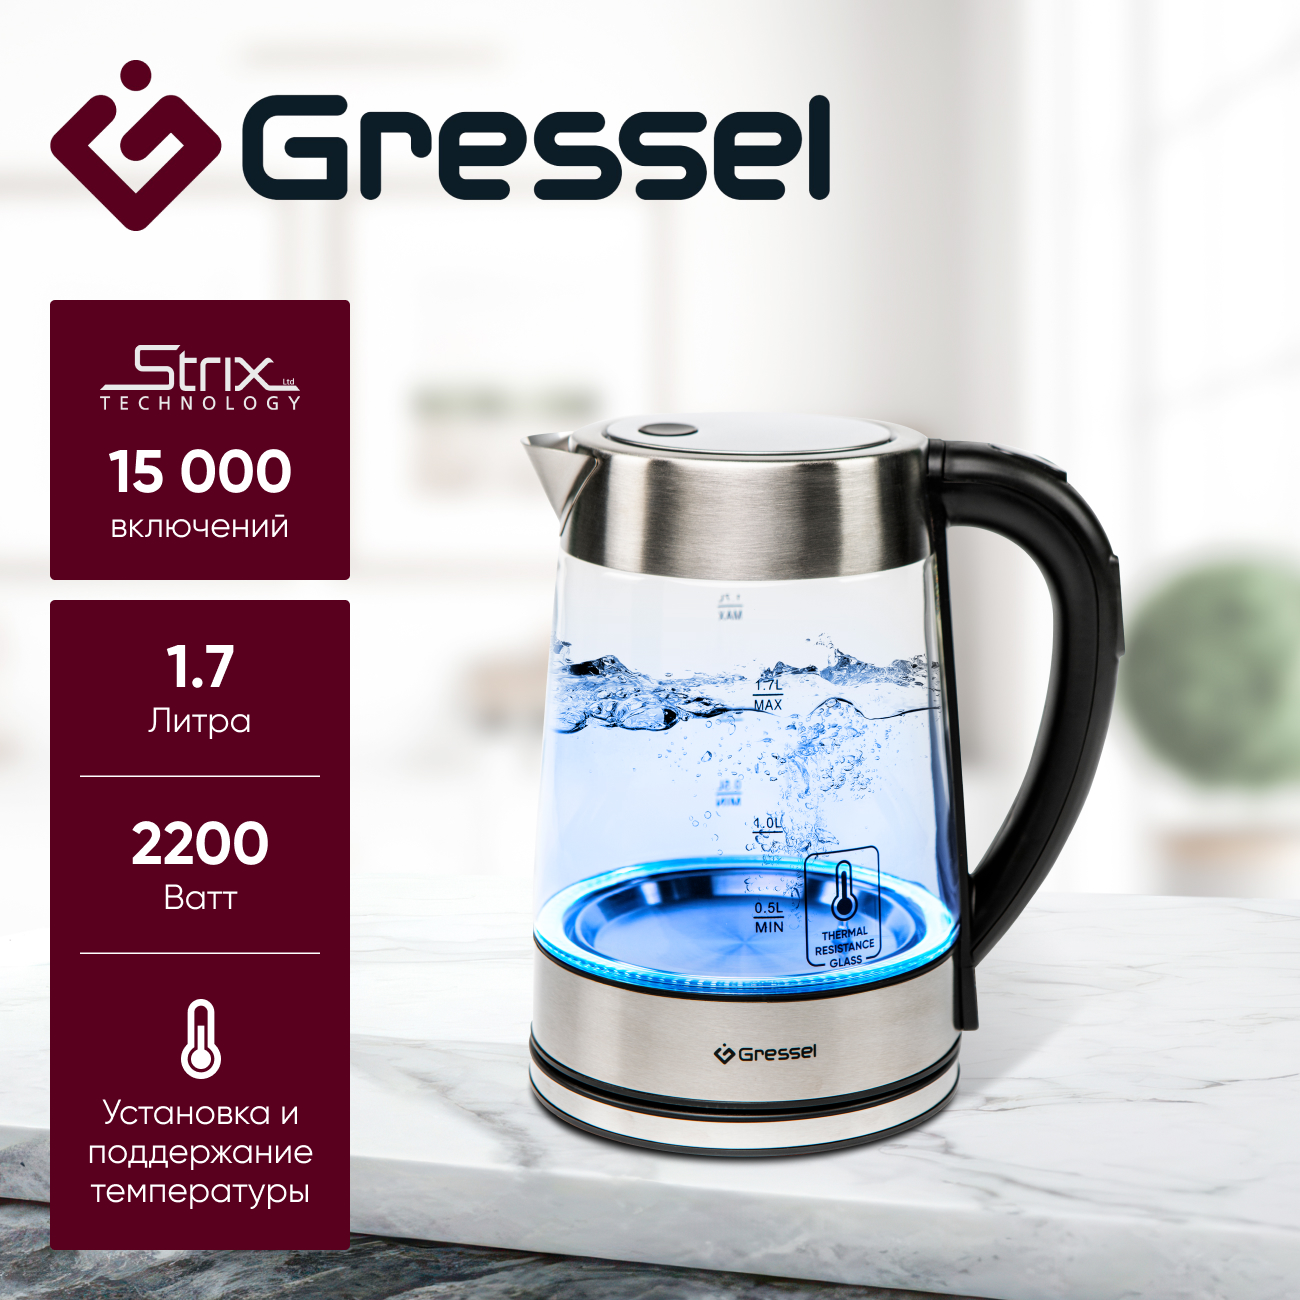 Чайник электрический Gressel GRK-1106 с регулировкой температуры .